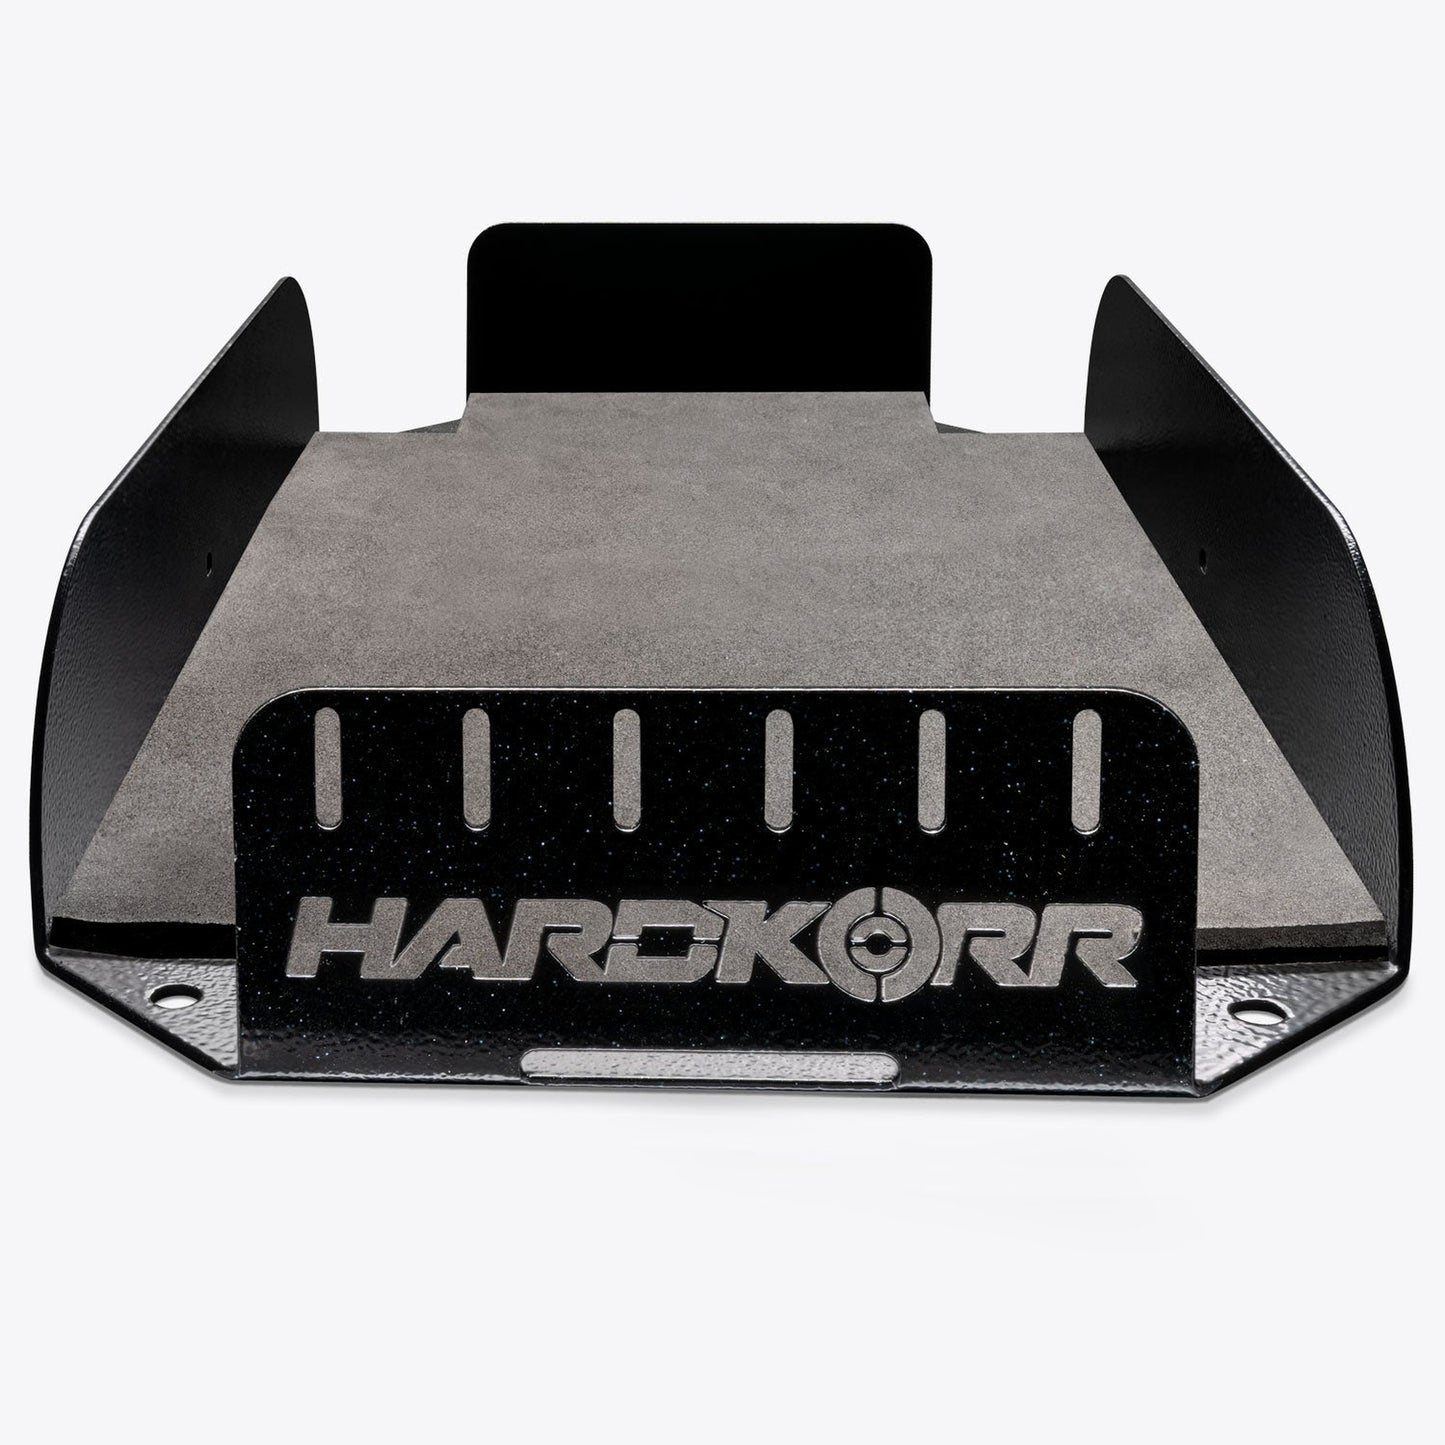 Hard Korr Battery Mounting Tray for Hardkorr Batteries